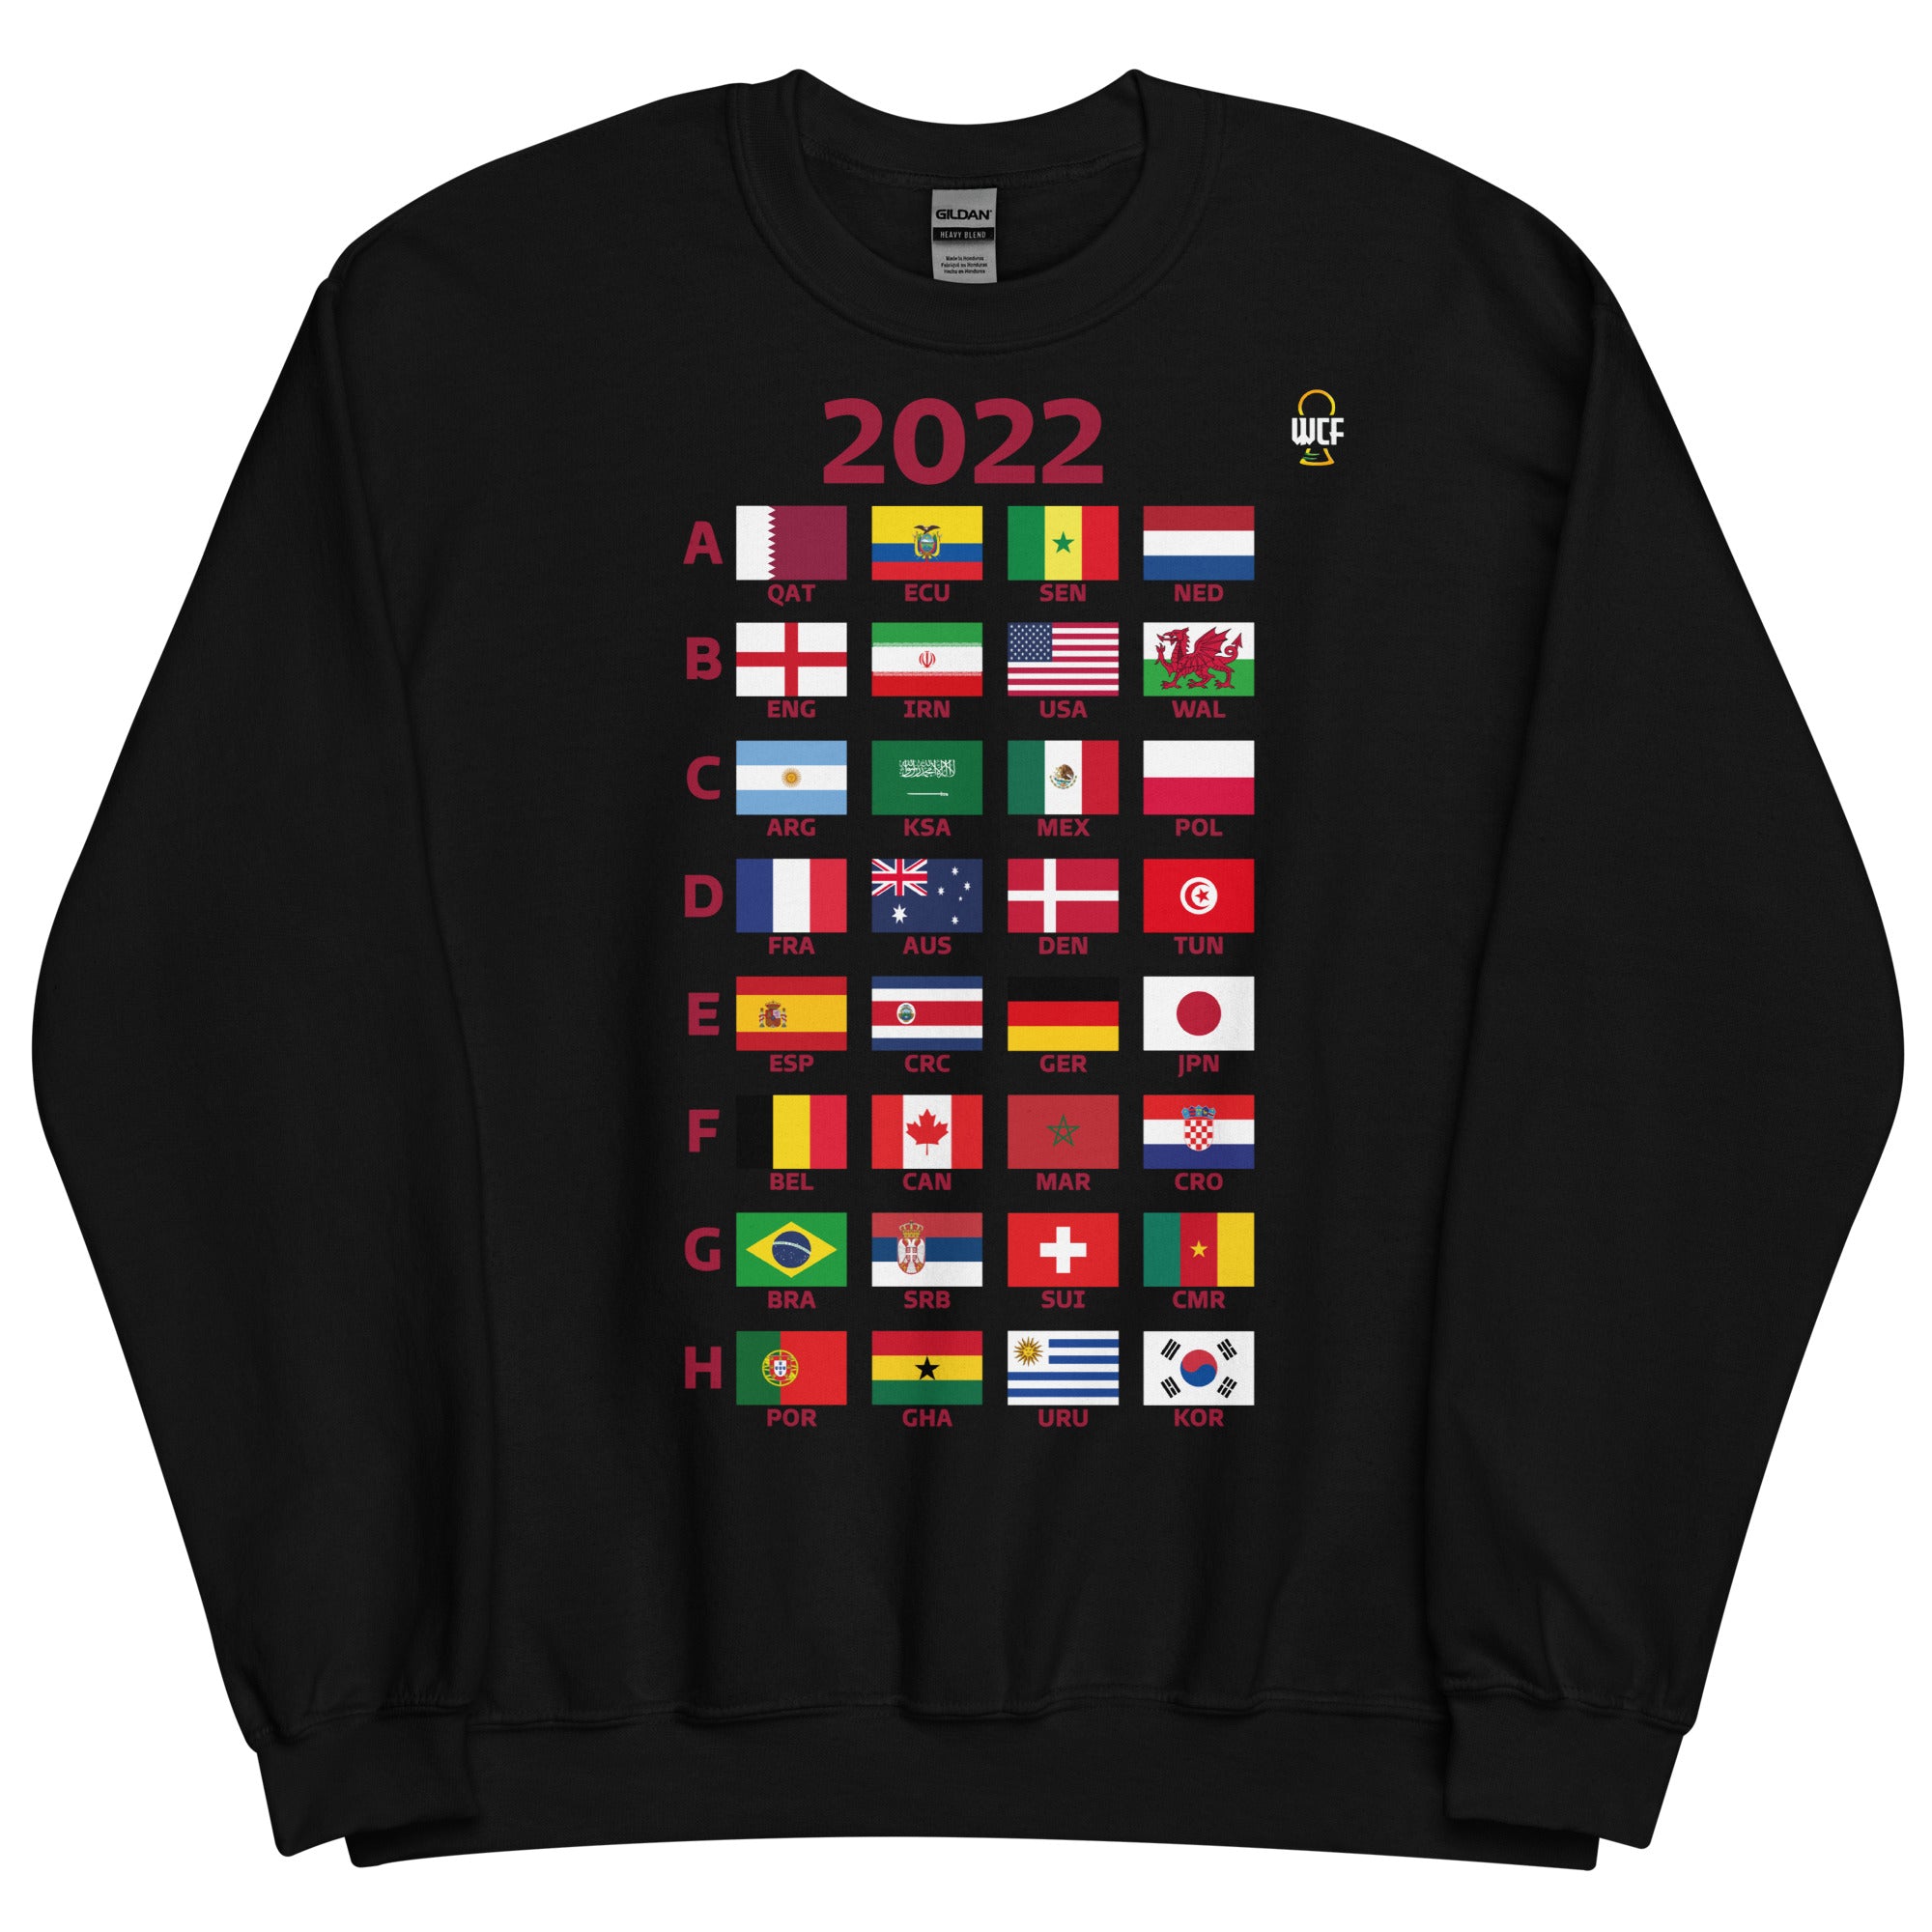 FIFA World Cup Qatar 2022 Sweatshirt